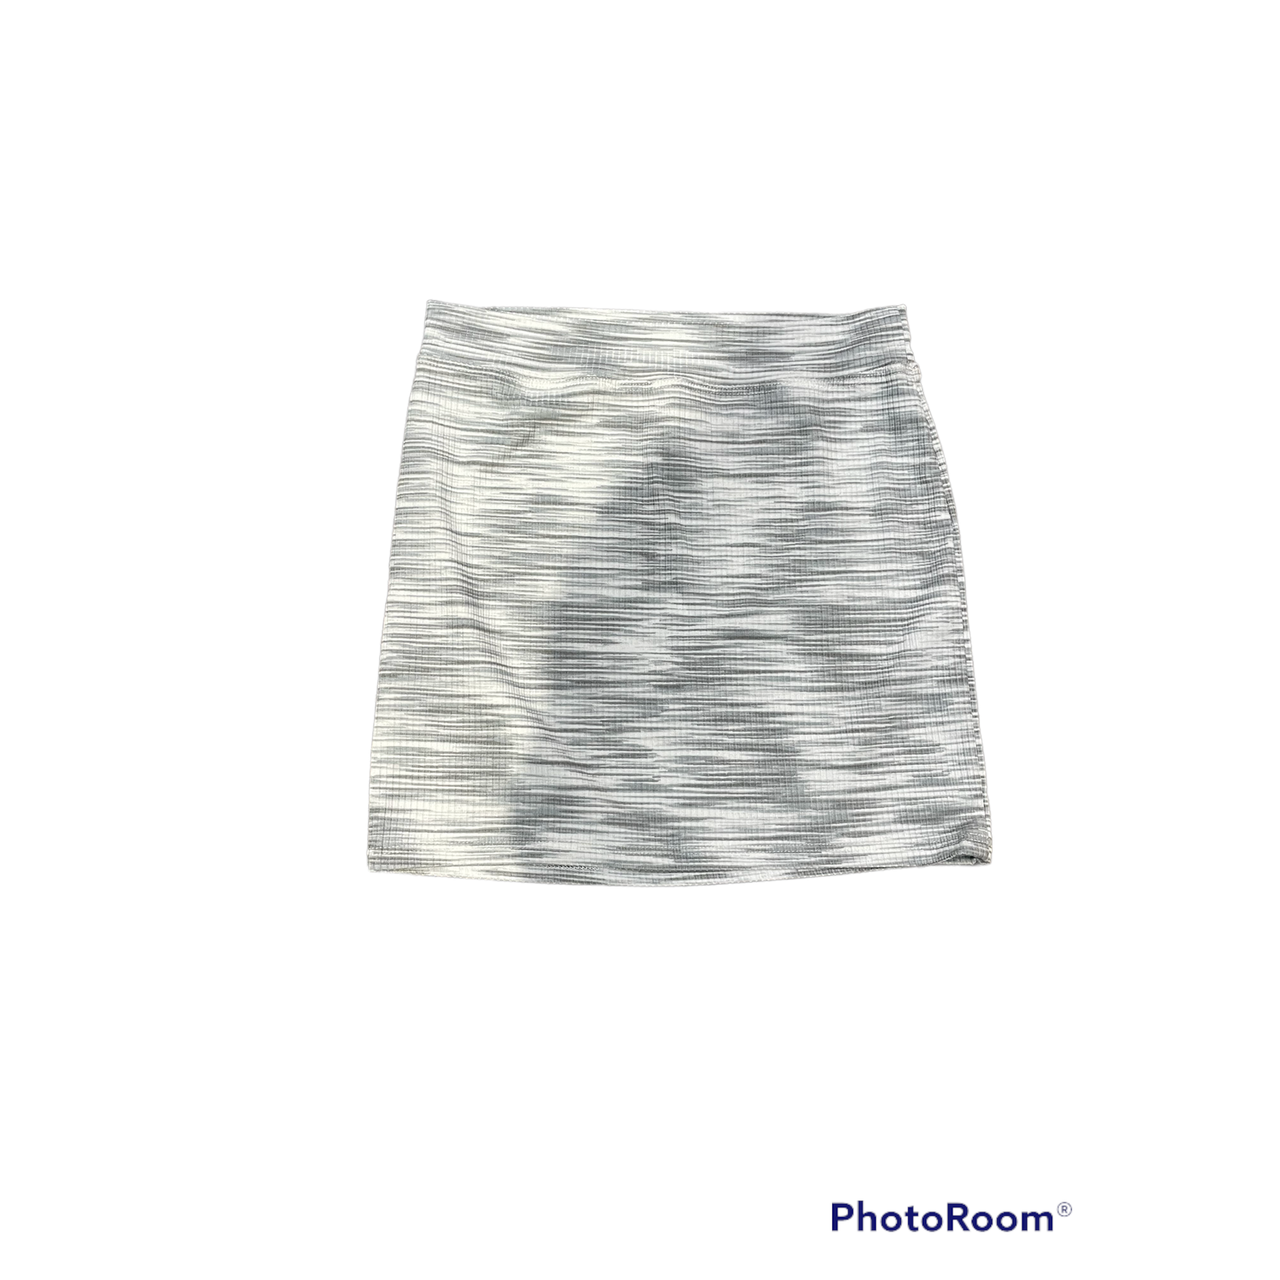 space dye grey/silver skirt